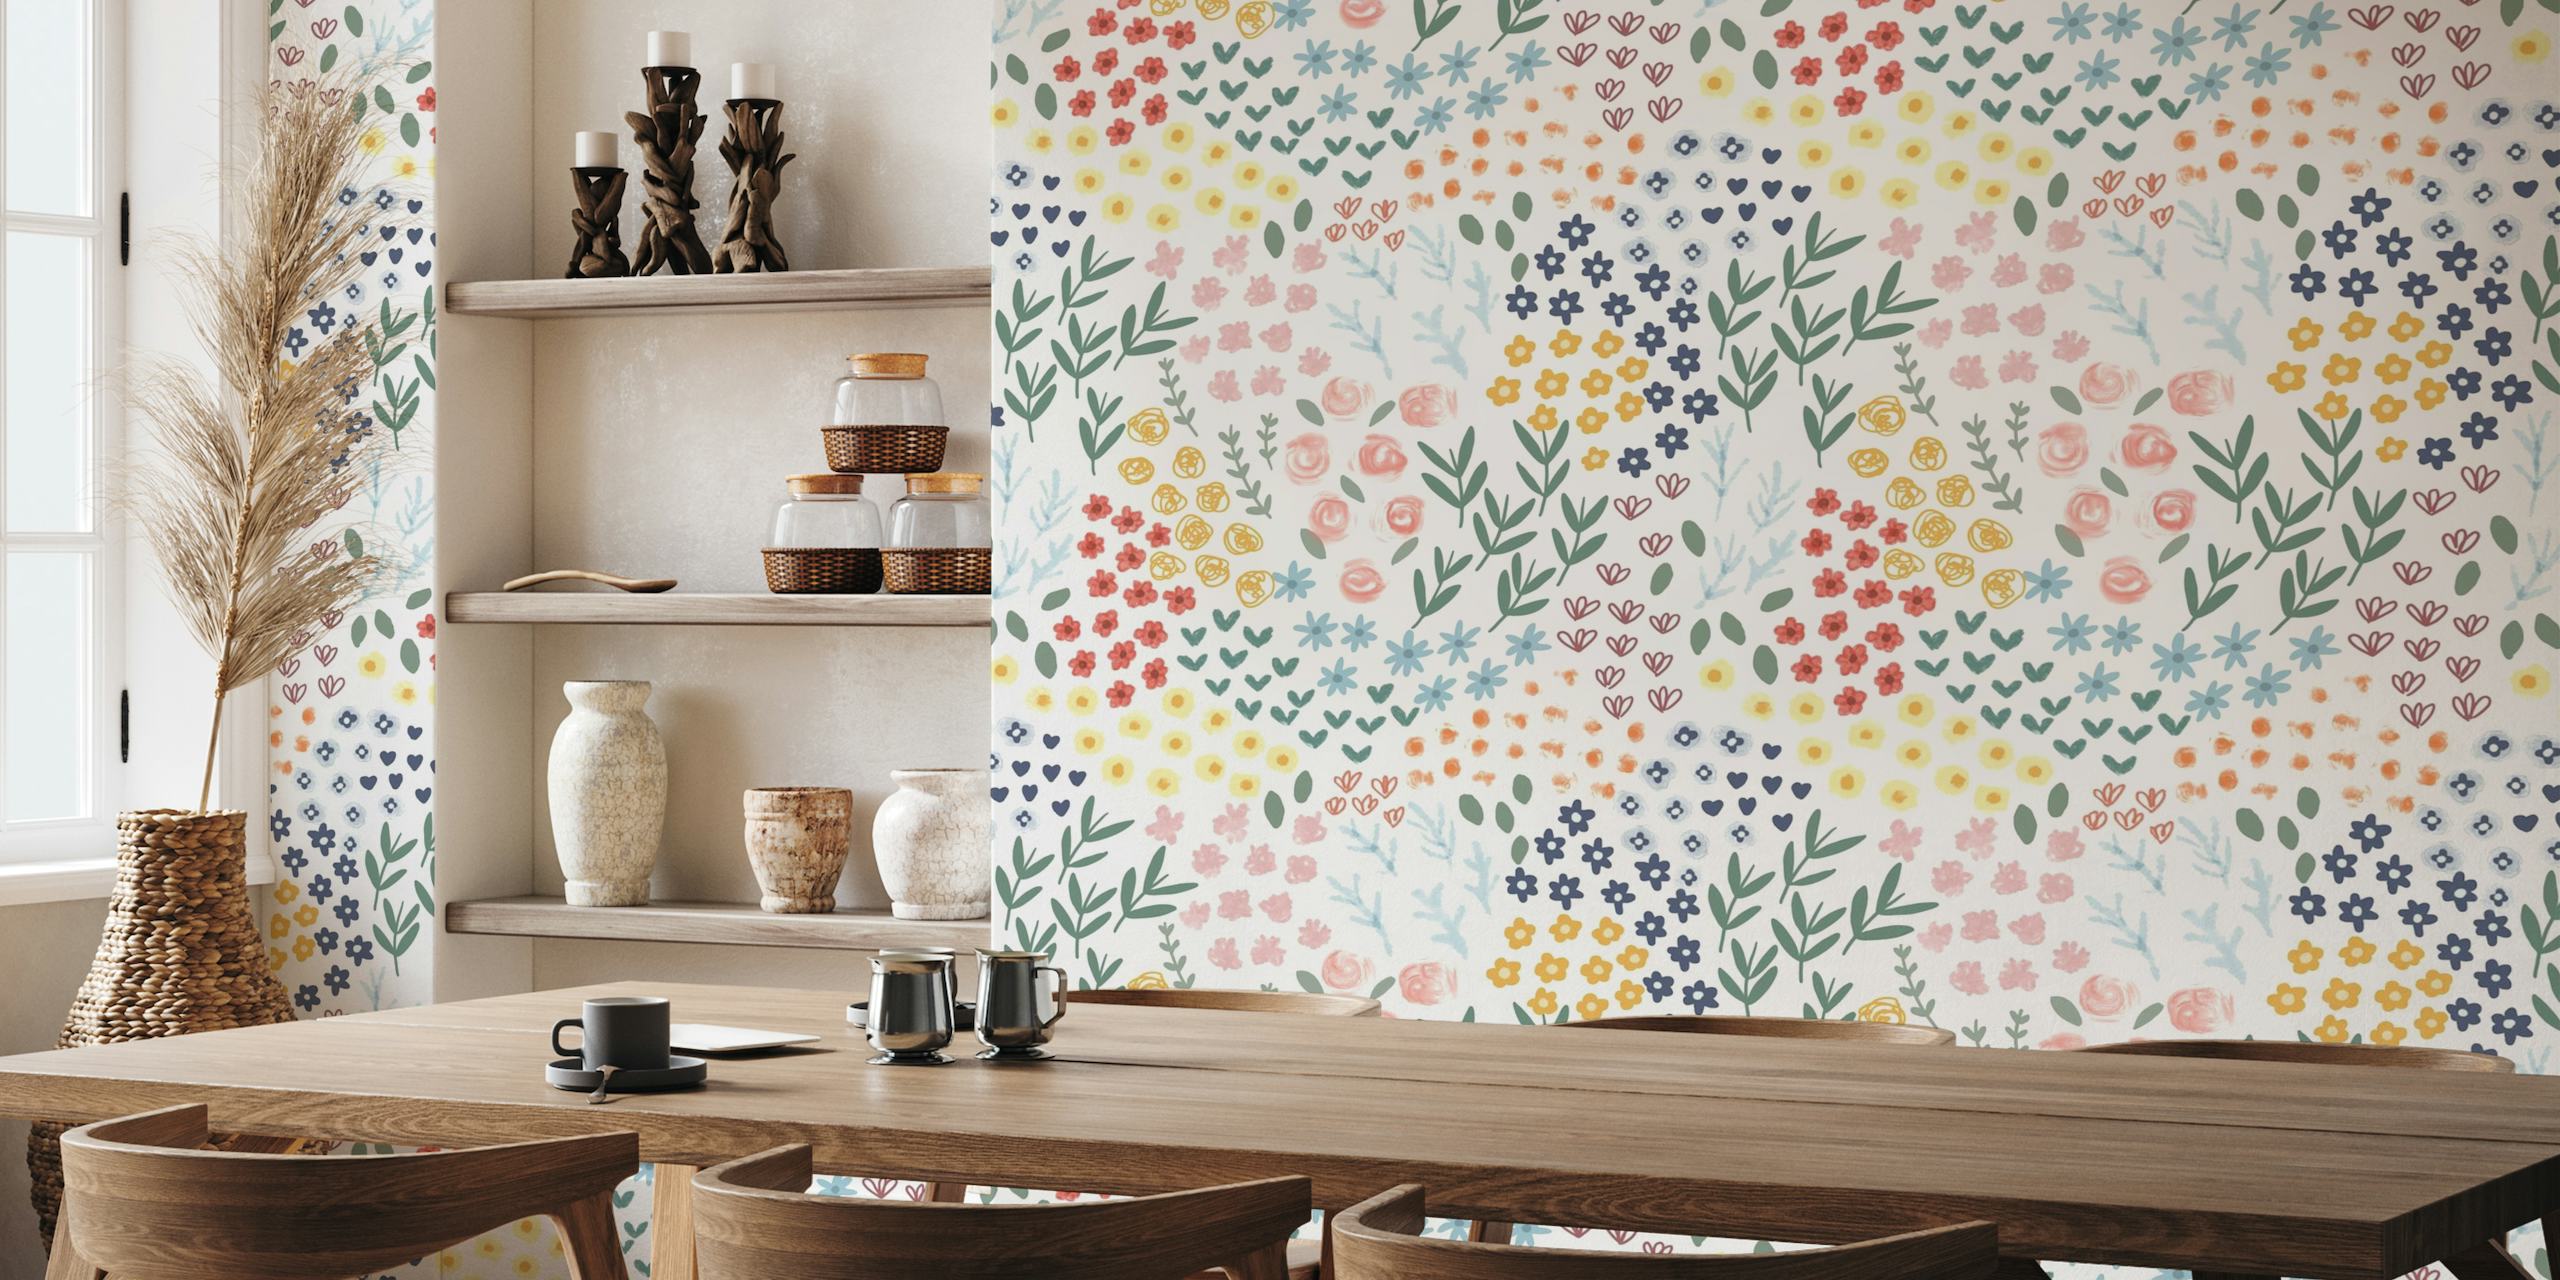 Mural de parede floral patchwork com uma paleta pastel de flores estilizadas e vegetais